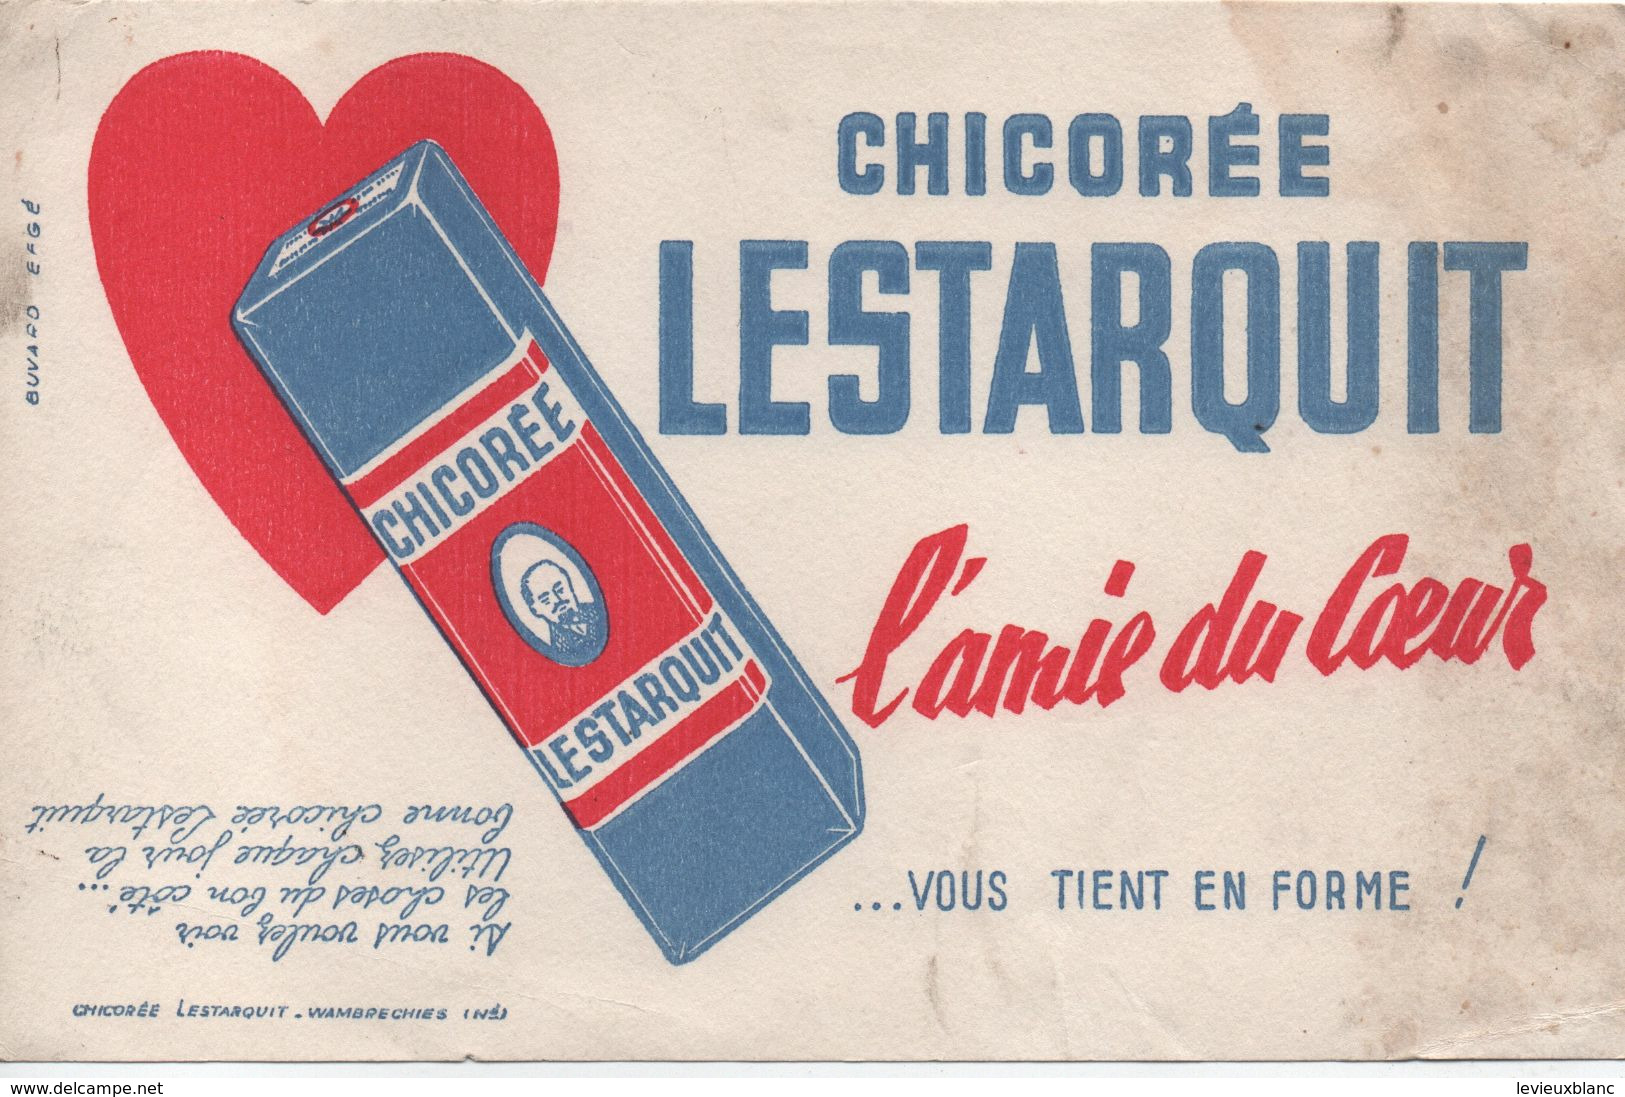 Buvard Publicitaire Ancien/Chicorée/Chicorée LESTARQUIT/L'Amie Du Coeur /WAMBRECHIES/Vers 1950-60               BUV497 - Kaffee & Tee